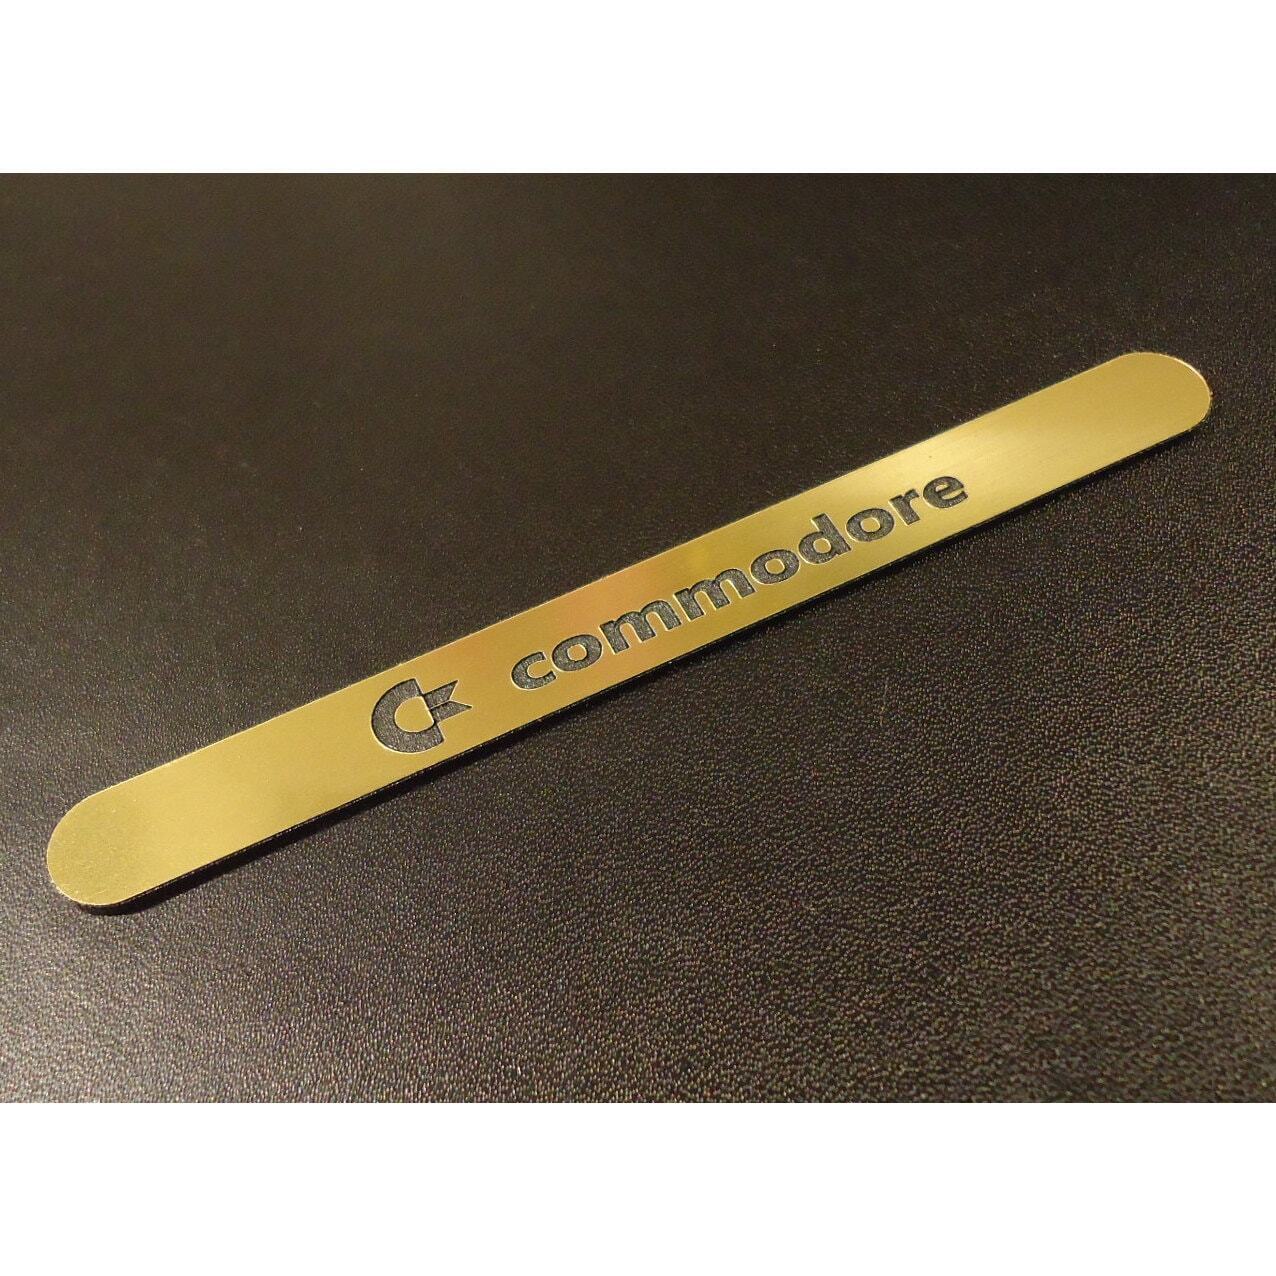 Commodore C64 Label / Aufkleber / Sticker / Badge / Logo 11cm x 1,1cm [241b]